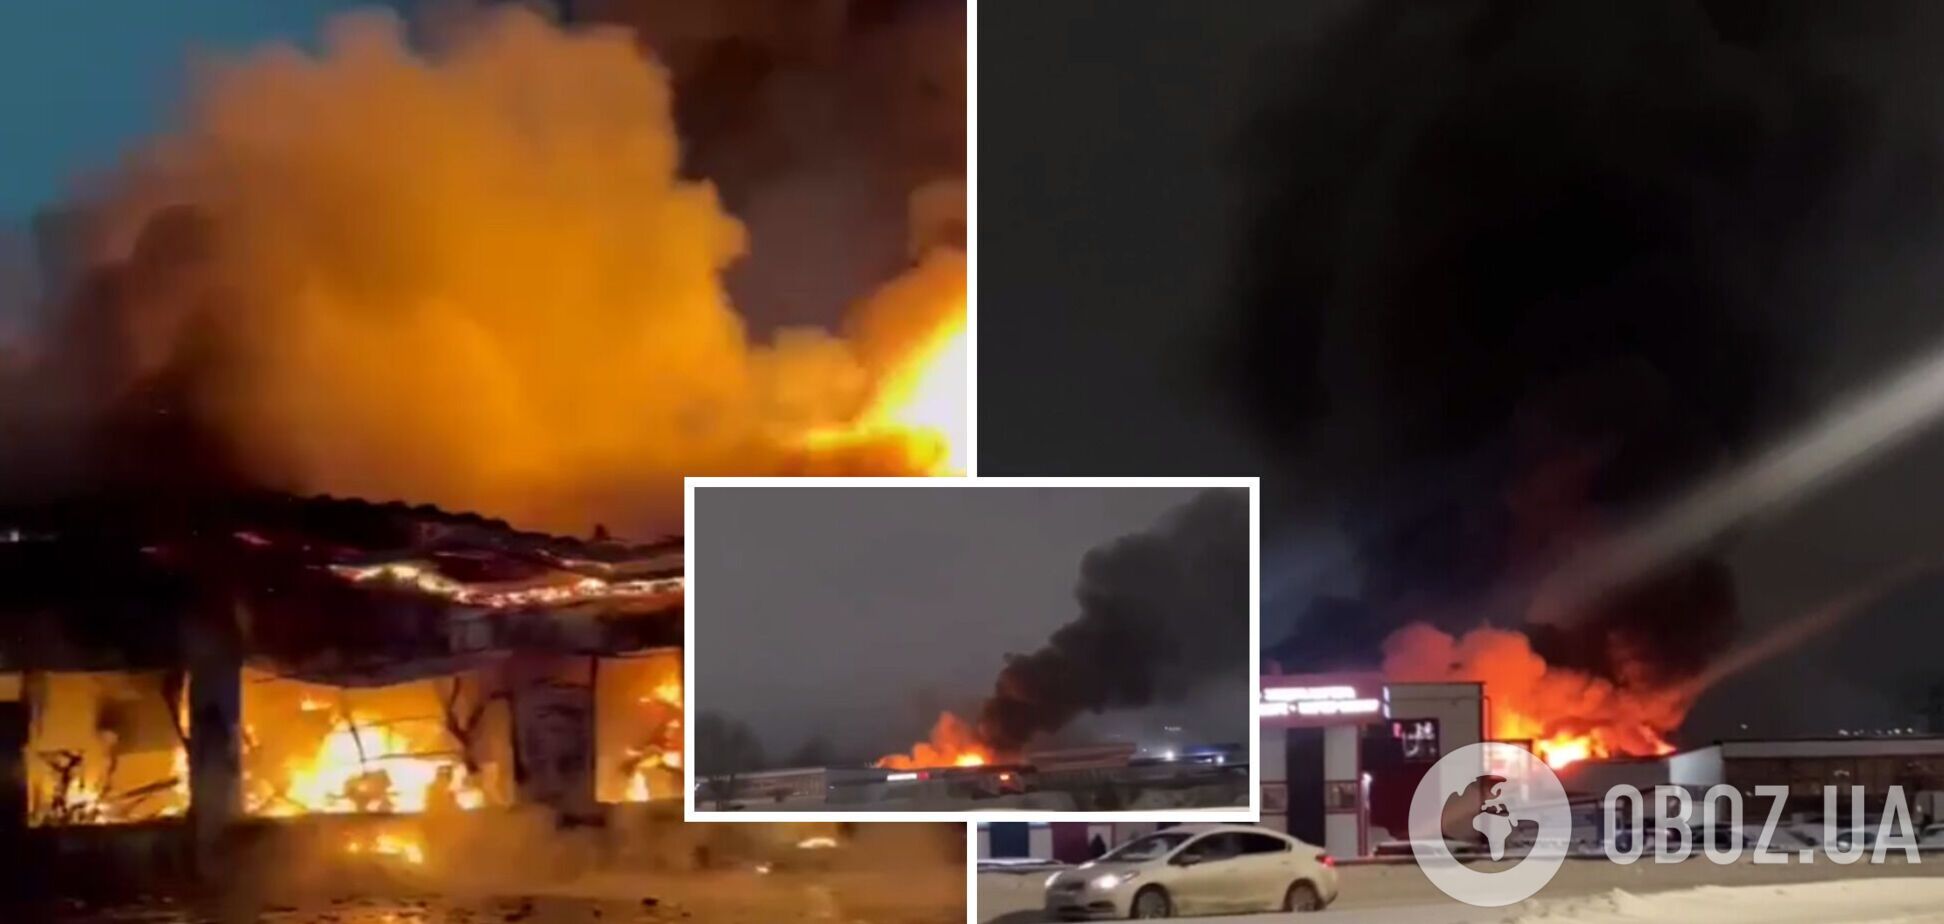 У російських Набережних Челнах спалахнула масштабна пожежа: згорів авторинок площею 6 800 квадратних метрів. Відео